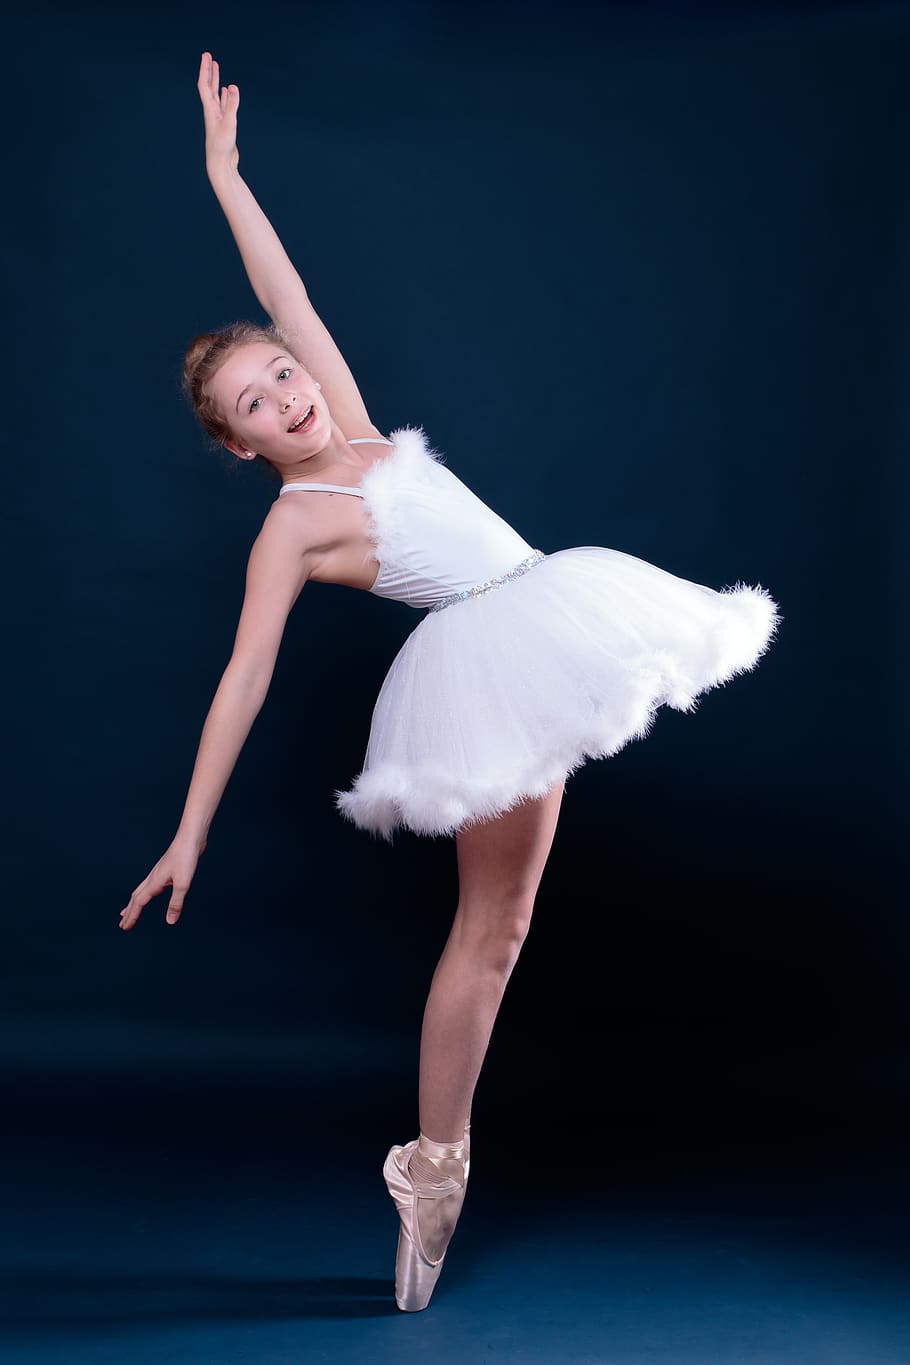 balé, dança, bailarina, criança, adolescente, equilíbrio, esportes, menina, dançarina de balé, elegância